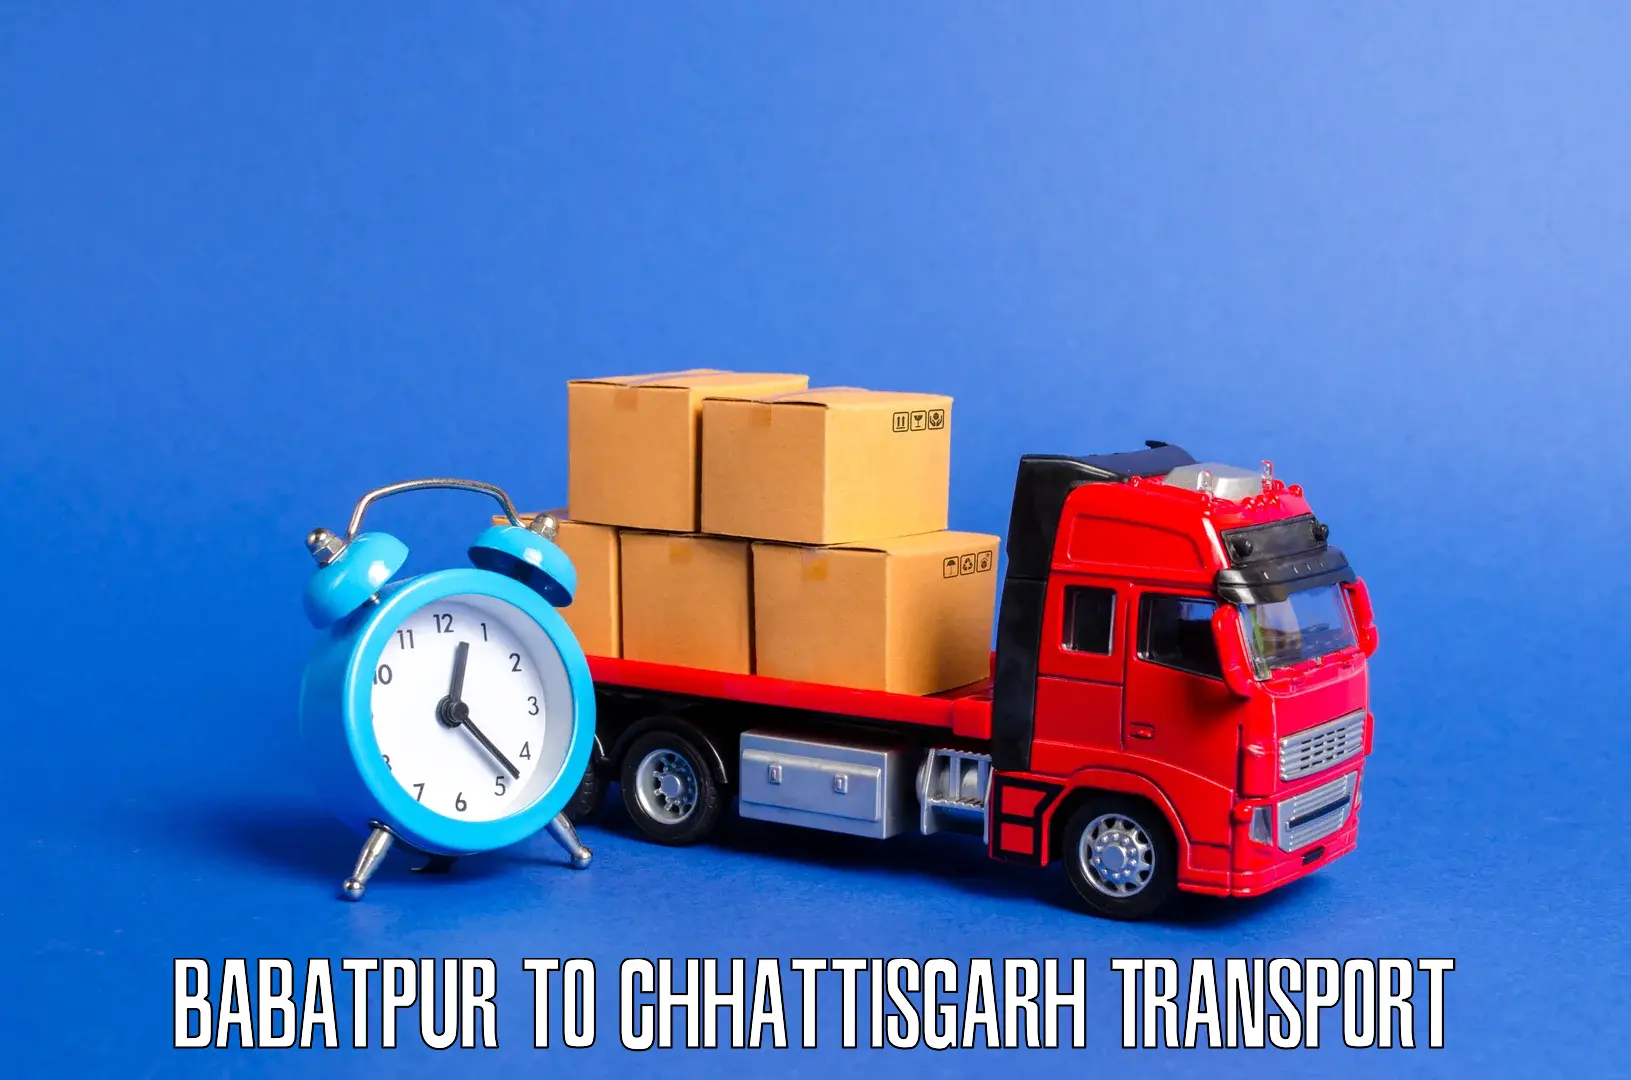 Bike transfer Babatpur to Raigarh Chhattisgarh